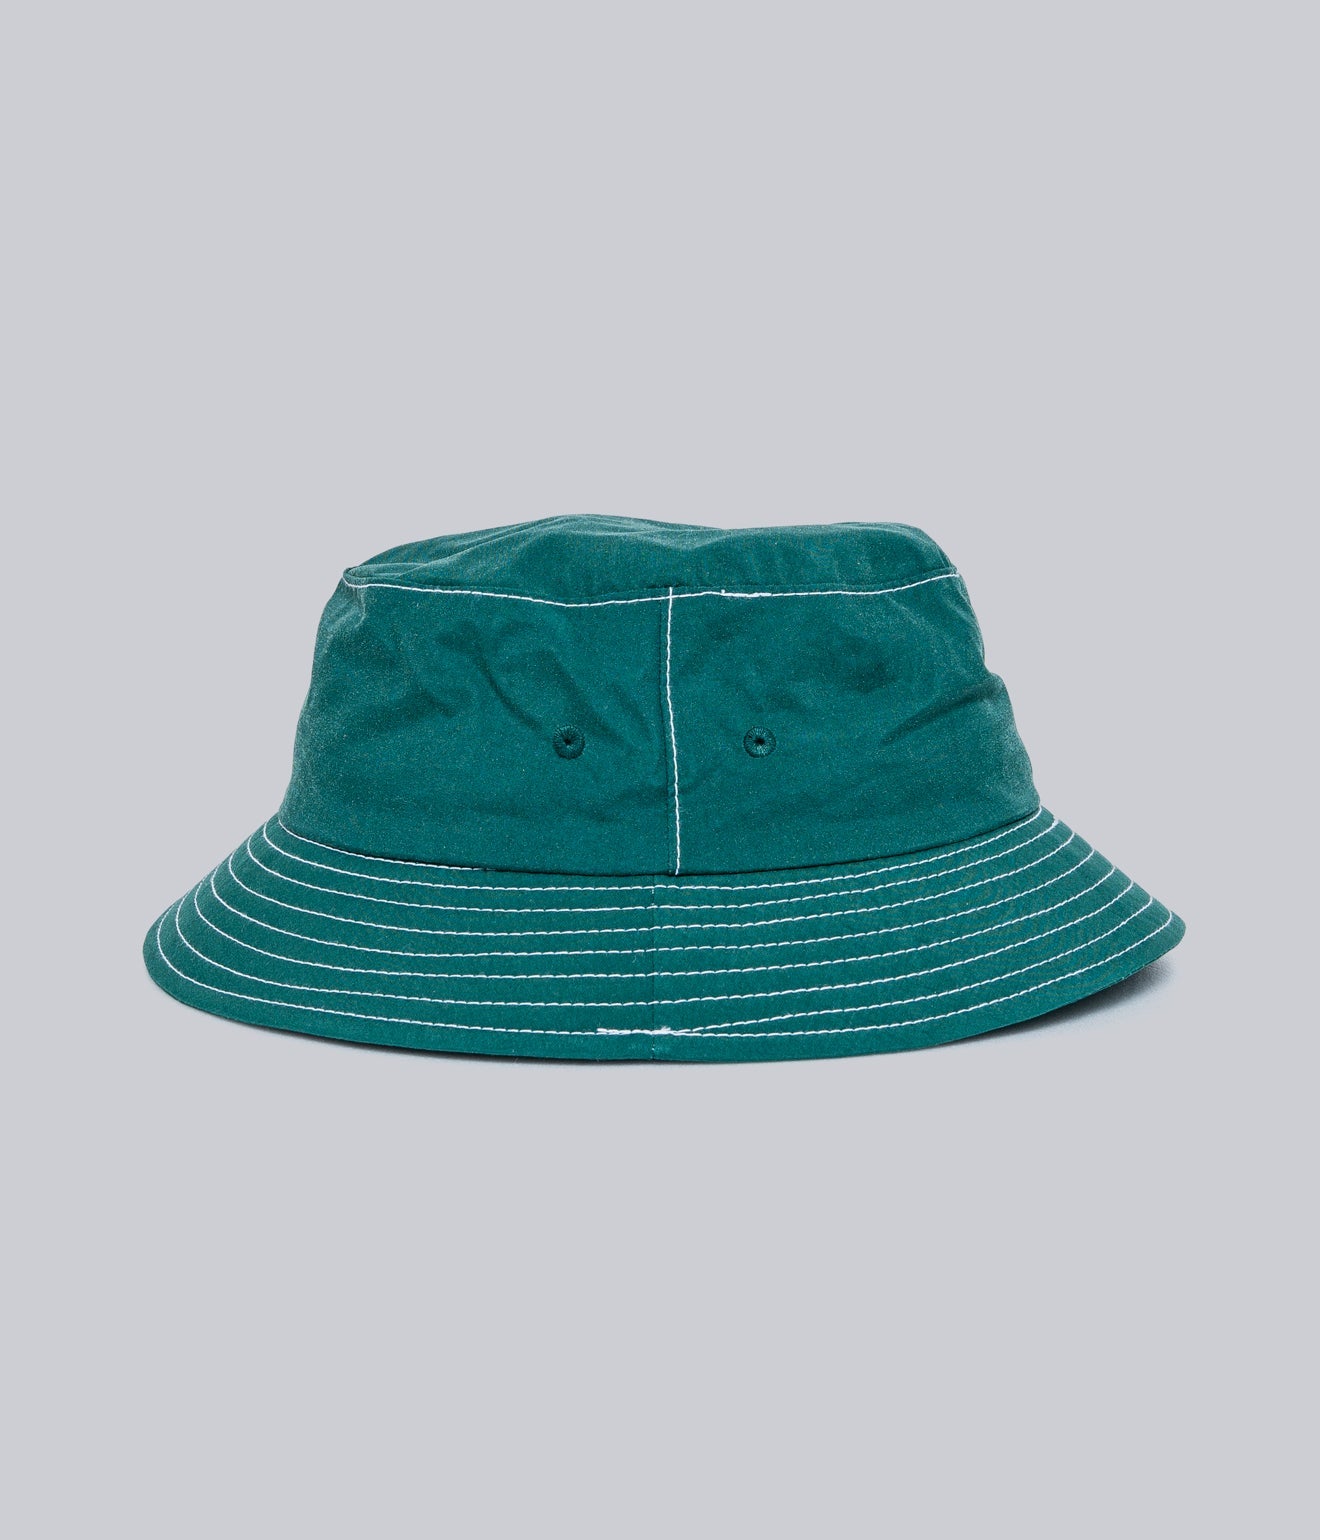 LITE YEAR "Japanese Nylon Taffeta Bucket Hat" Varsity Green - WEAREALLANIMALS